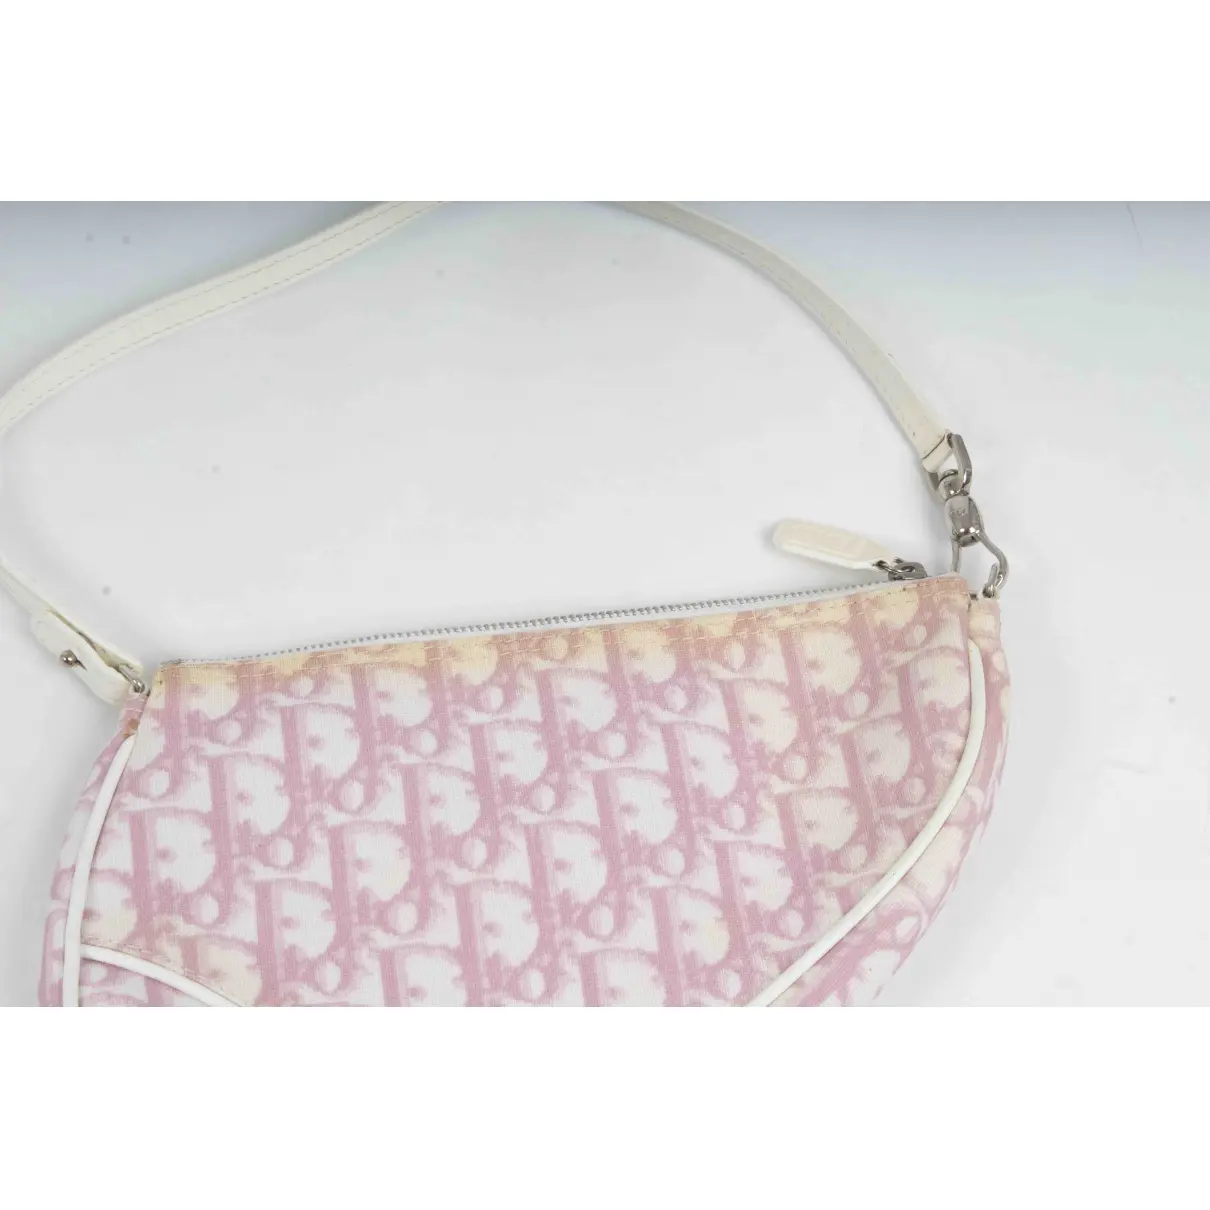 Buy Dior Saddle vintage Classic cloth handbag online - Vintage